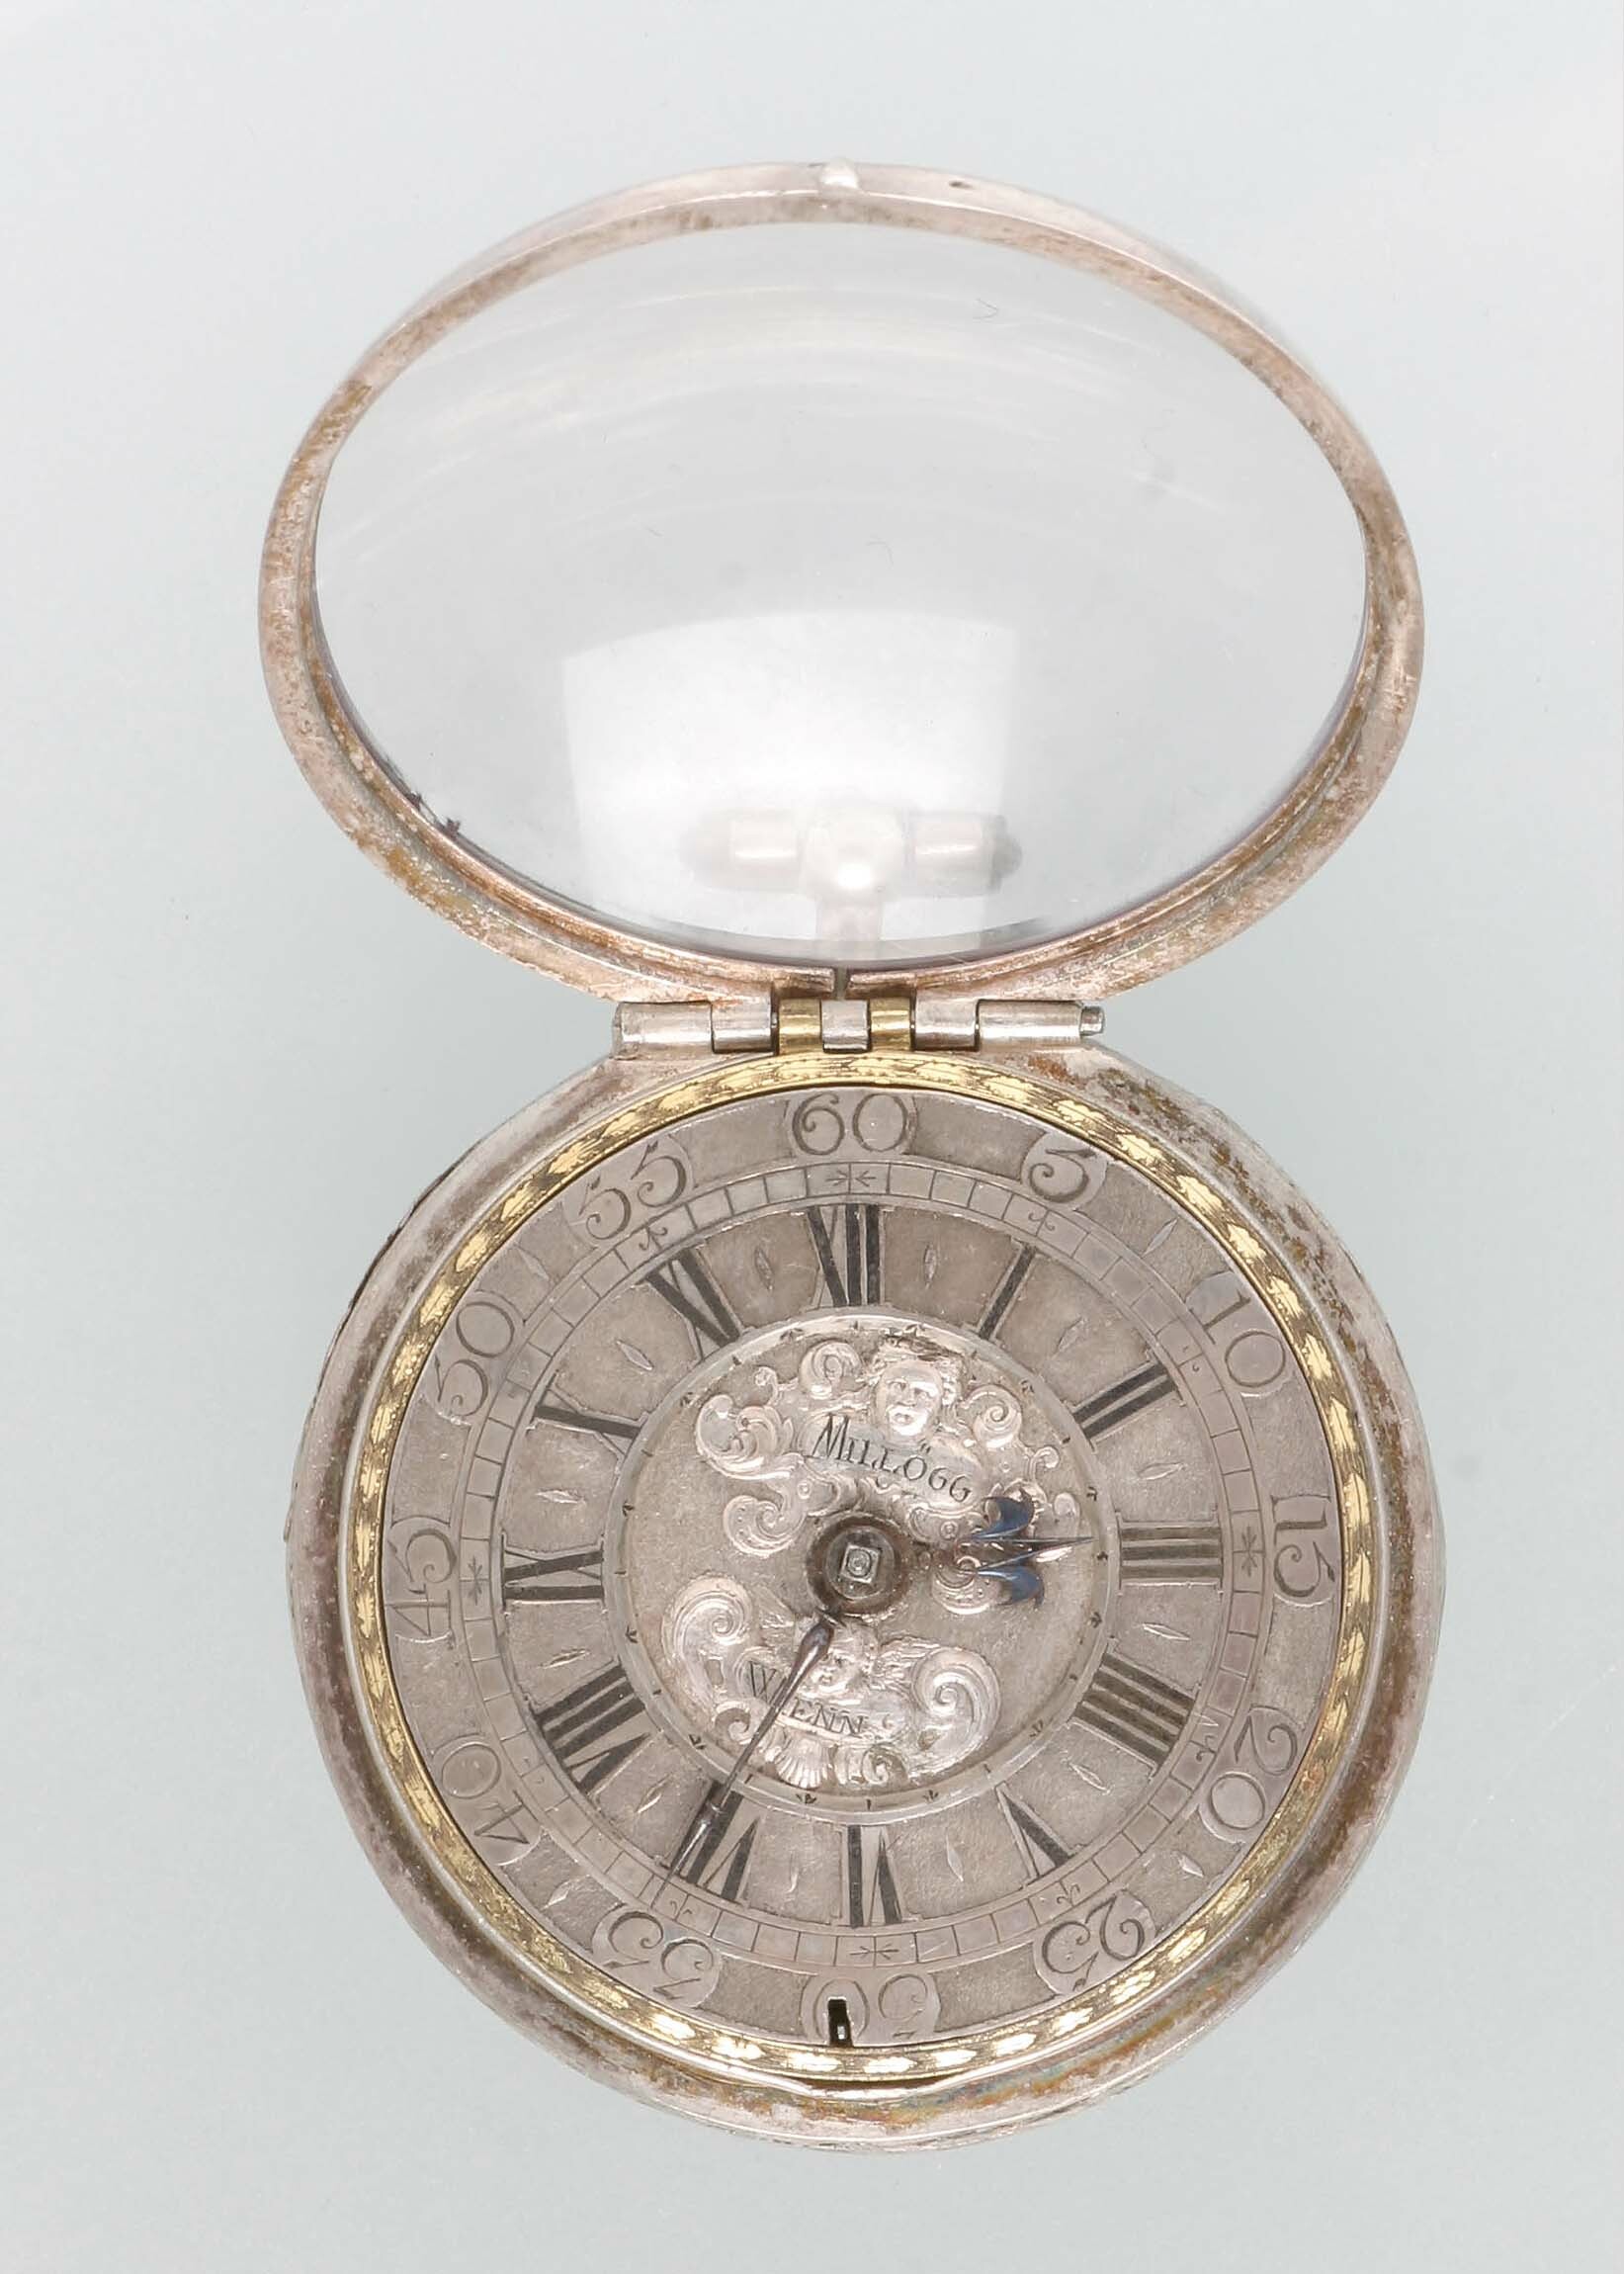 Taschenuhr, Millögg, Wien, um 1725 (Deutsches Uhrenmuseum CC BY-SA)